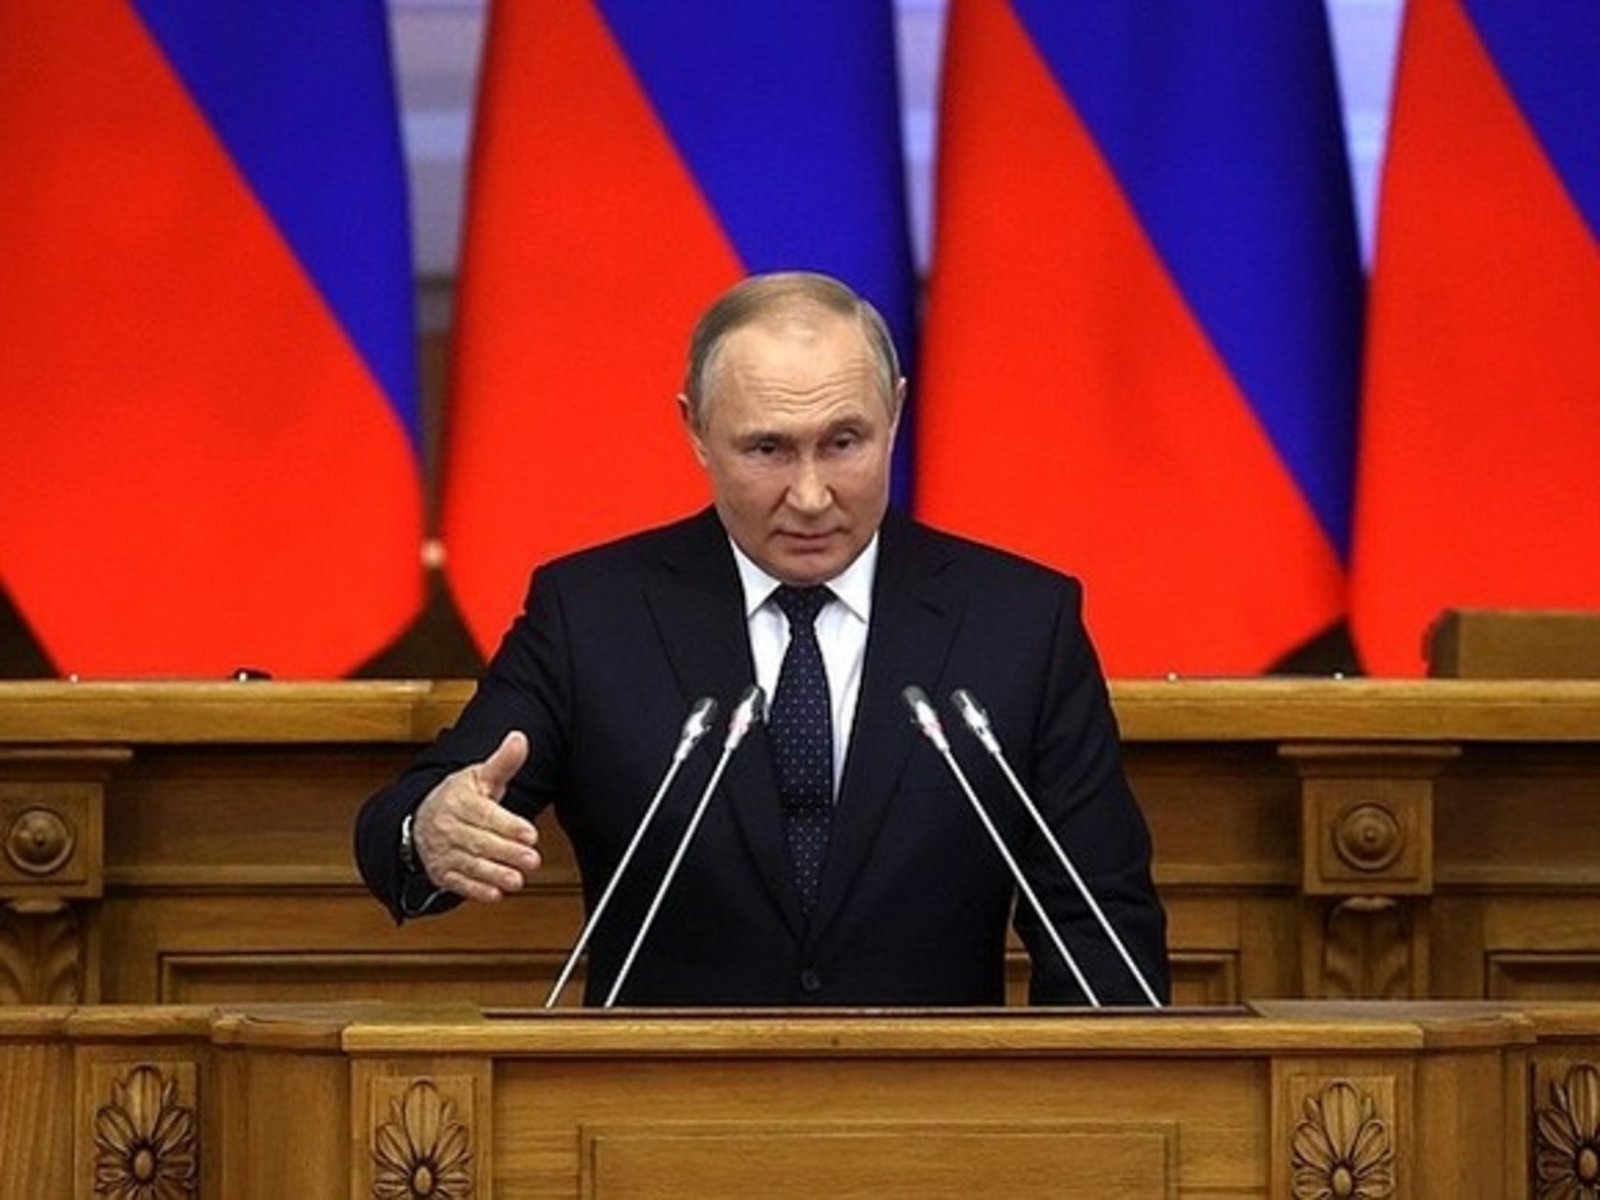 Путин: малый бизнес может получить льготные кредиты при замещении иностранных фирм